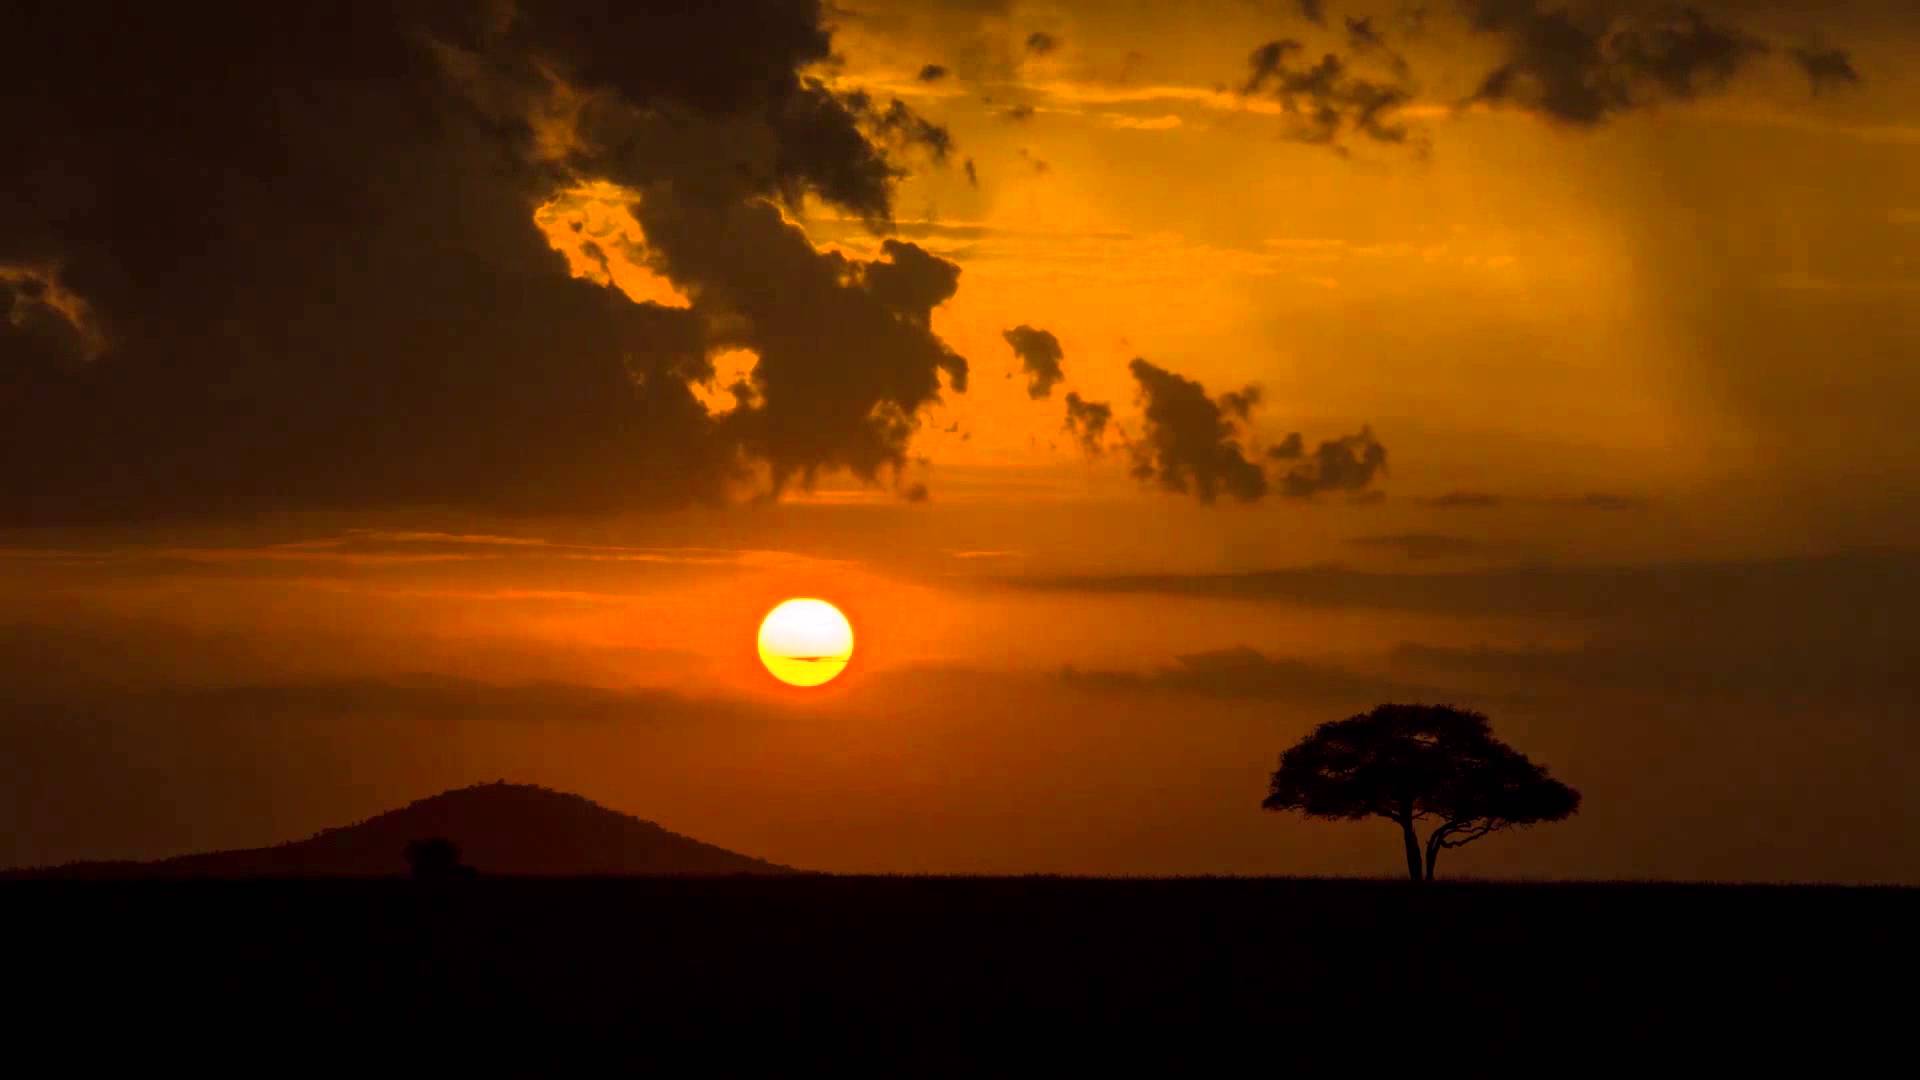 Time-Lapse Tuesday: Timeless Serengeti Sunset - YouTube